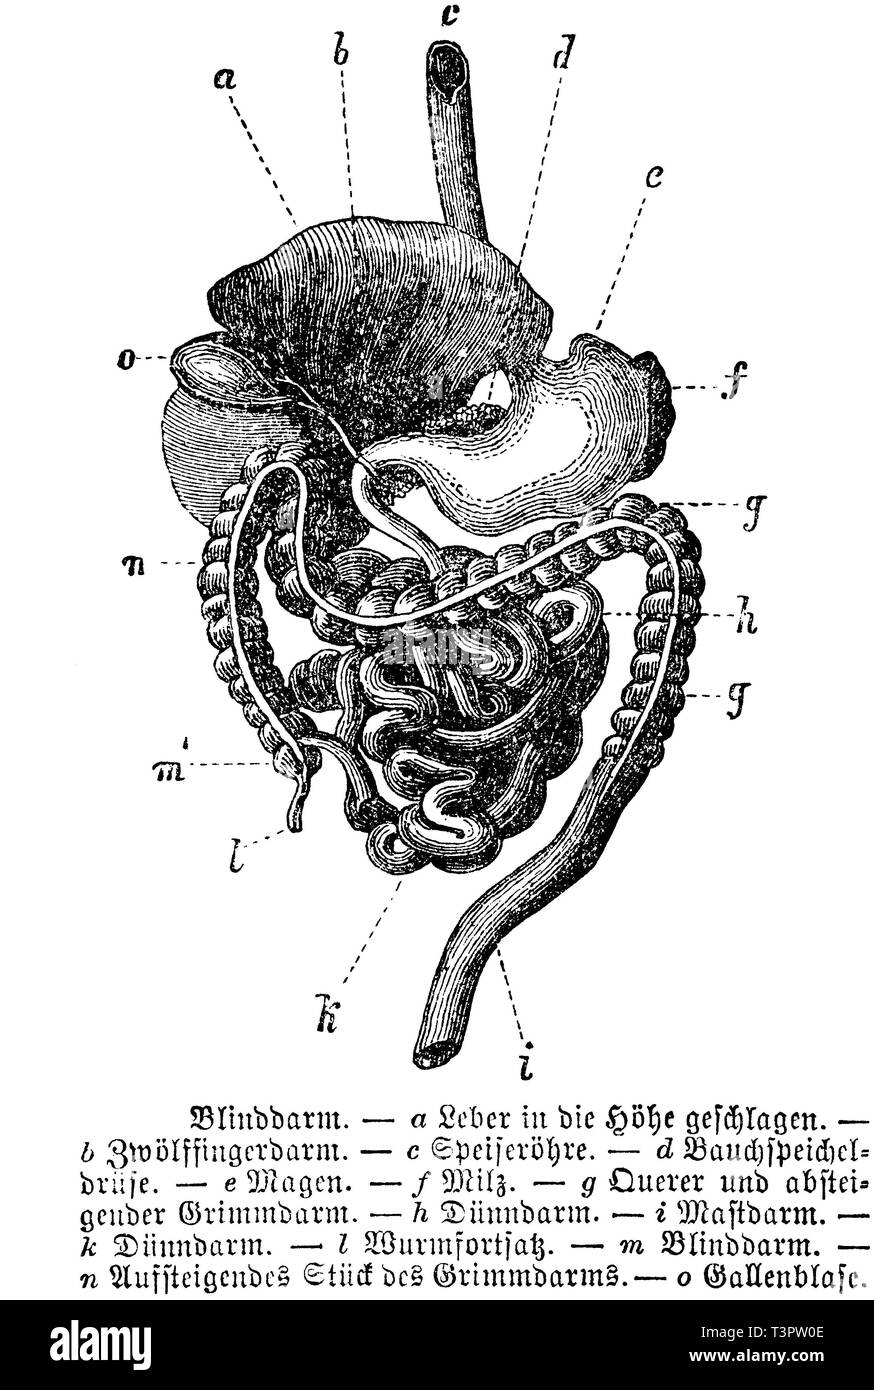 Umano: Appendice. a) fegato, b) duodeno, c) dell'esofago, d) il pancreas, e) dello stomaco, f) la milza, g) trasversale e colon discendente, h) piccolo intestino, mi) retto, k) dell'intestino tenue, l) appendice, m) cieco ; n) pezzo ascendente del colon, o) gallbladder, anonym 1887 Foto Stock